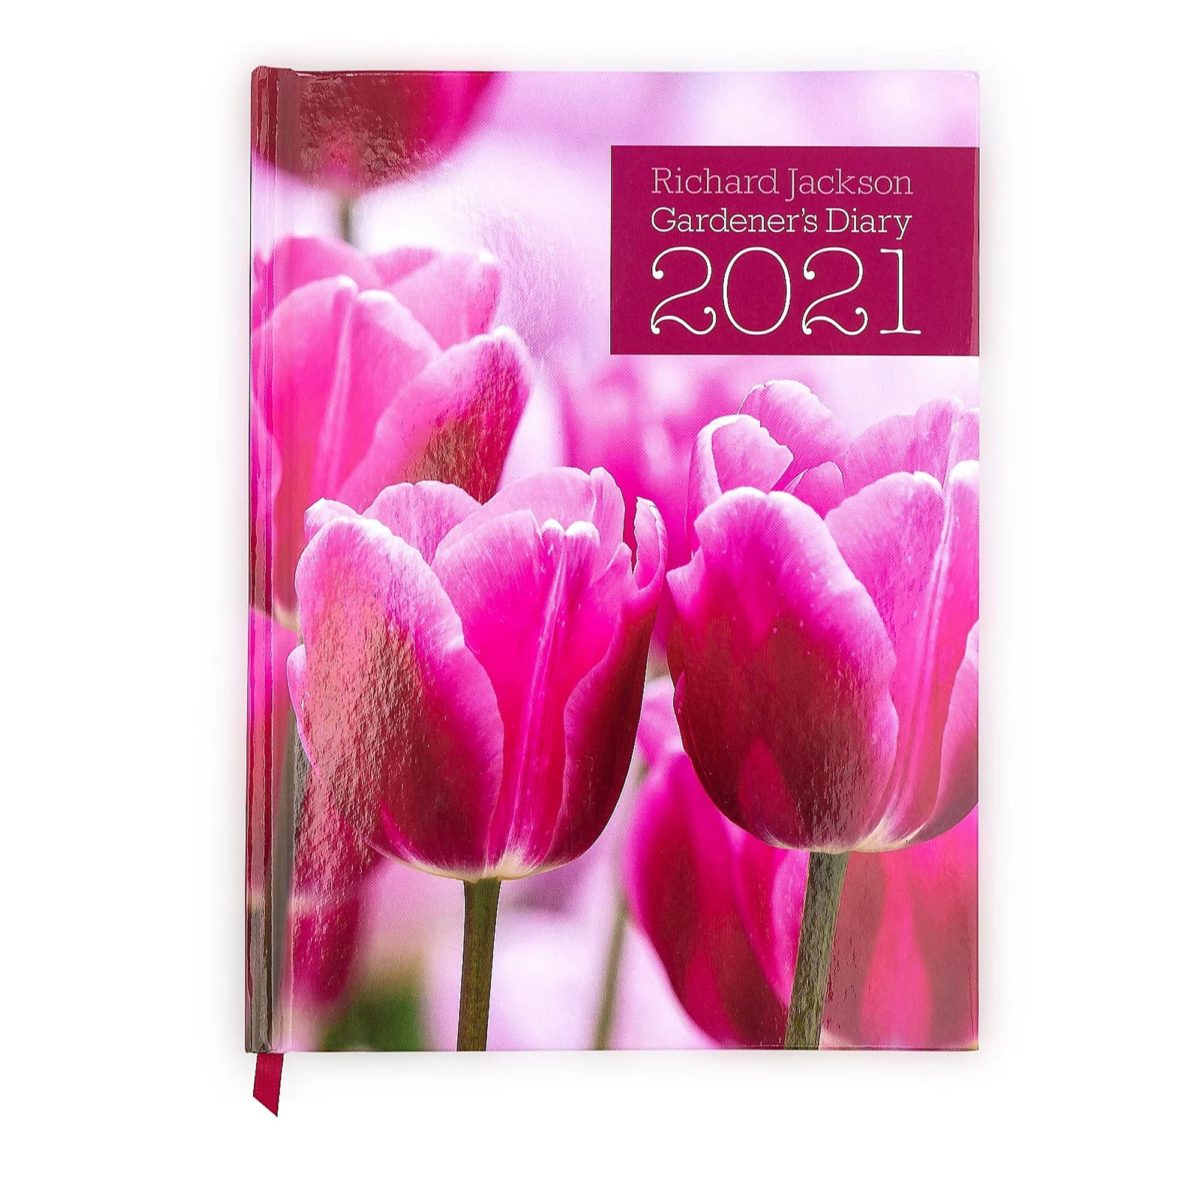 Richard Jackson Gardener's Diary 2021 front cover